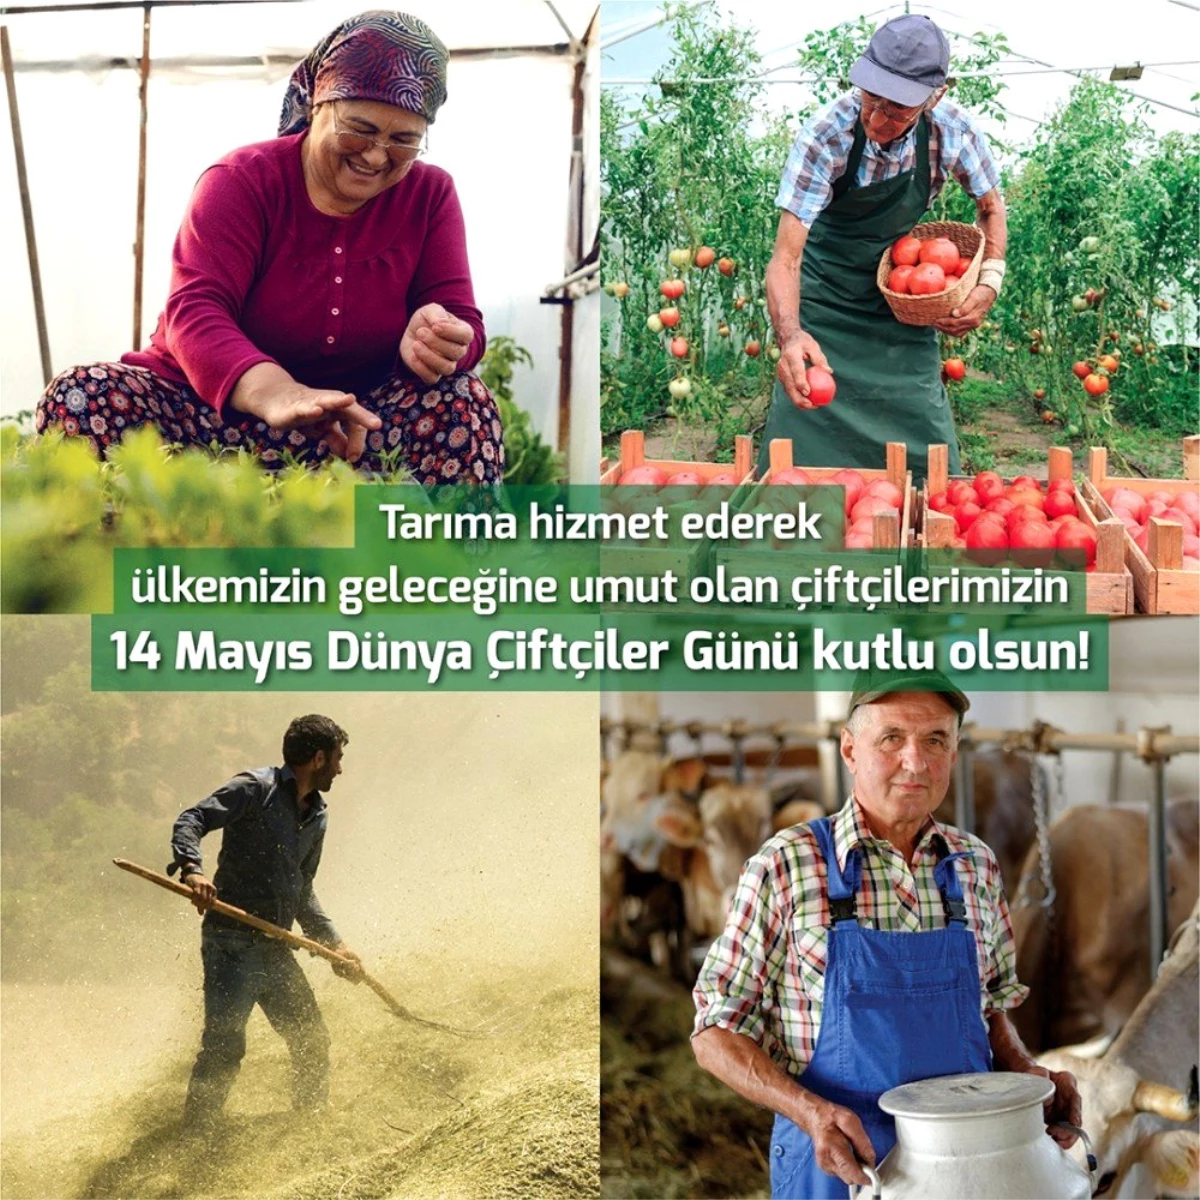 TARSİM: "Çiftçilerimizin günü kutlu olsun"